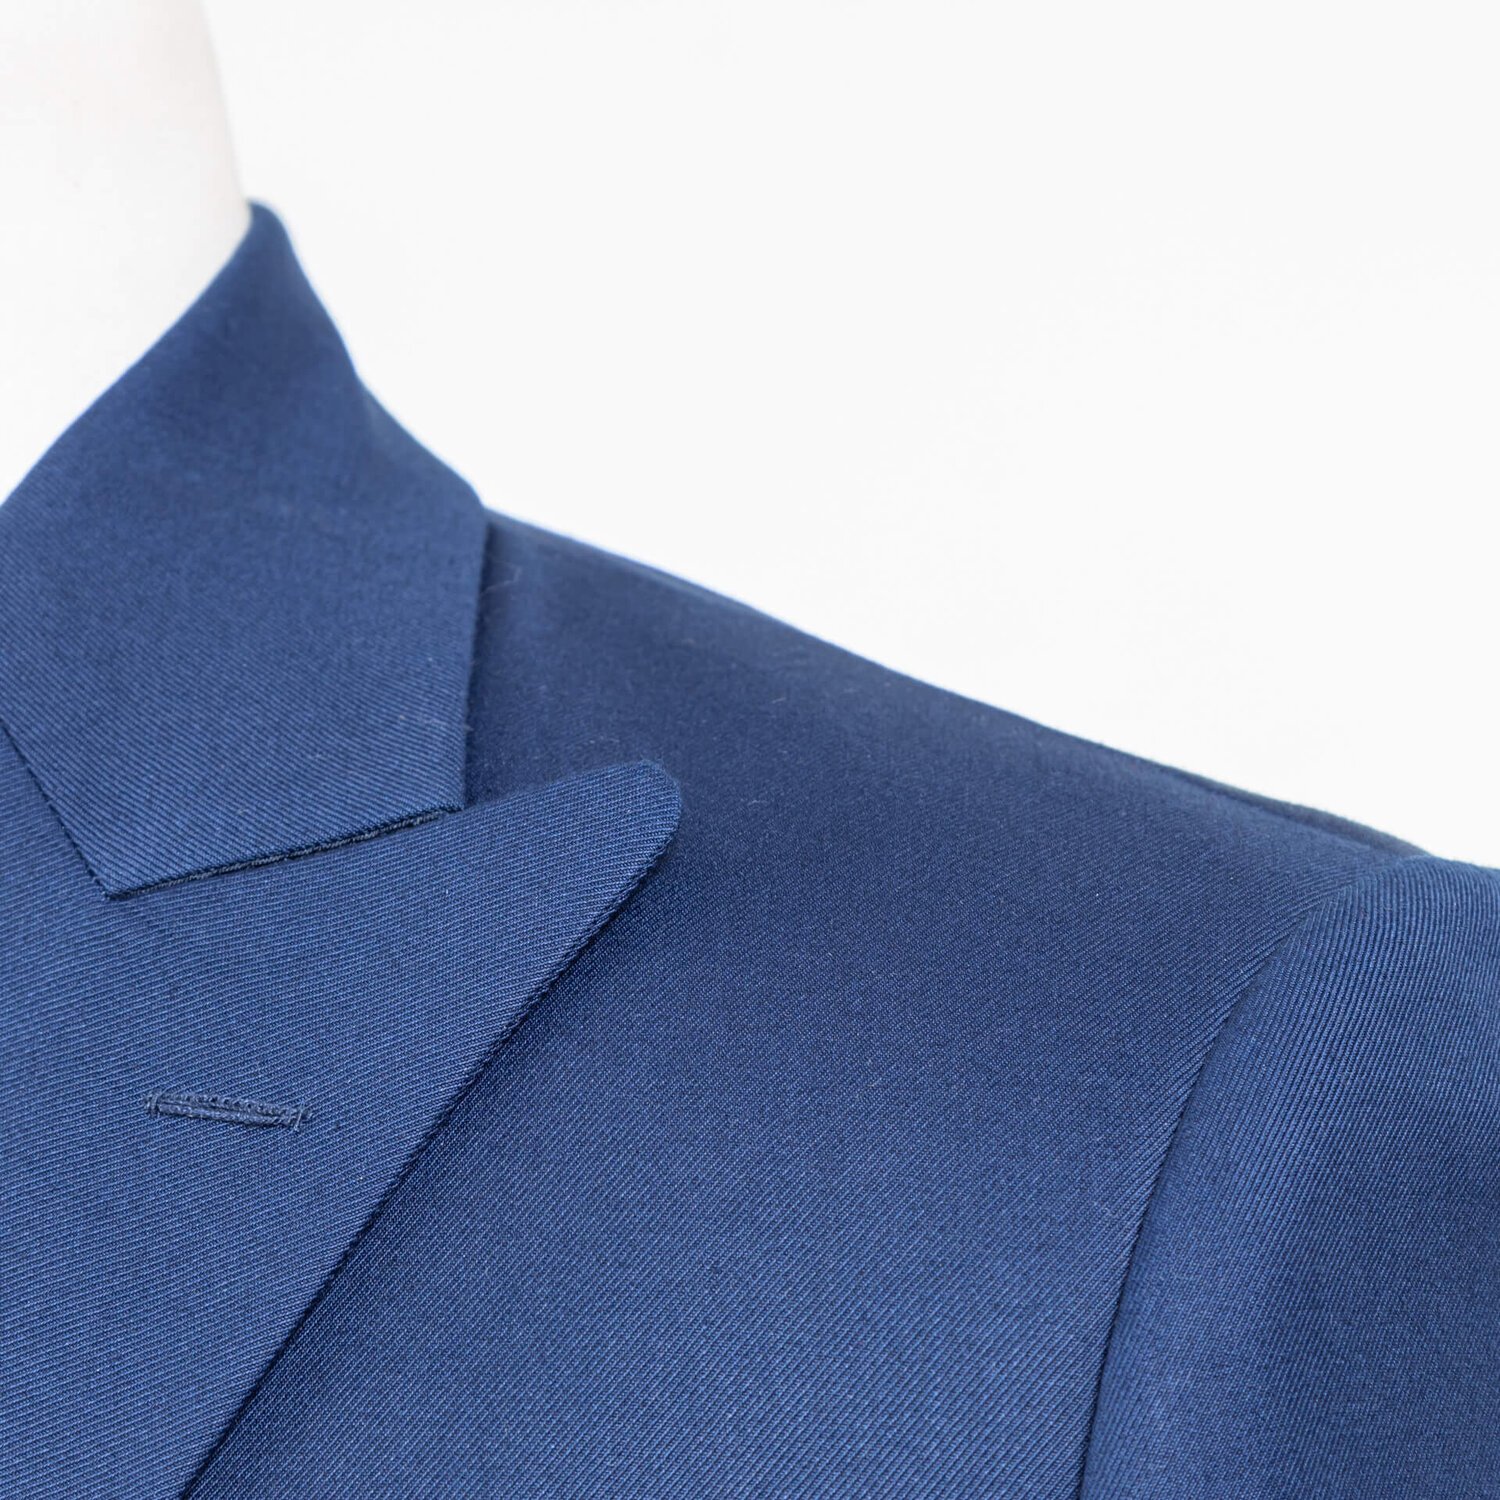 Bespoke Jacket Blazer Double Breasted 2x4 Royal Blue